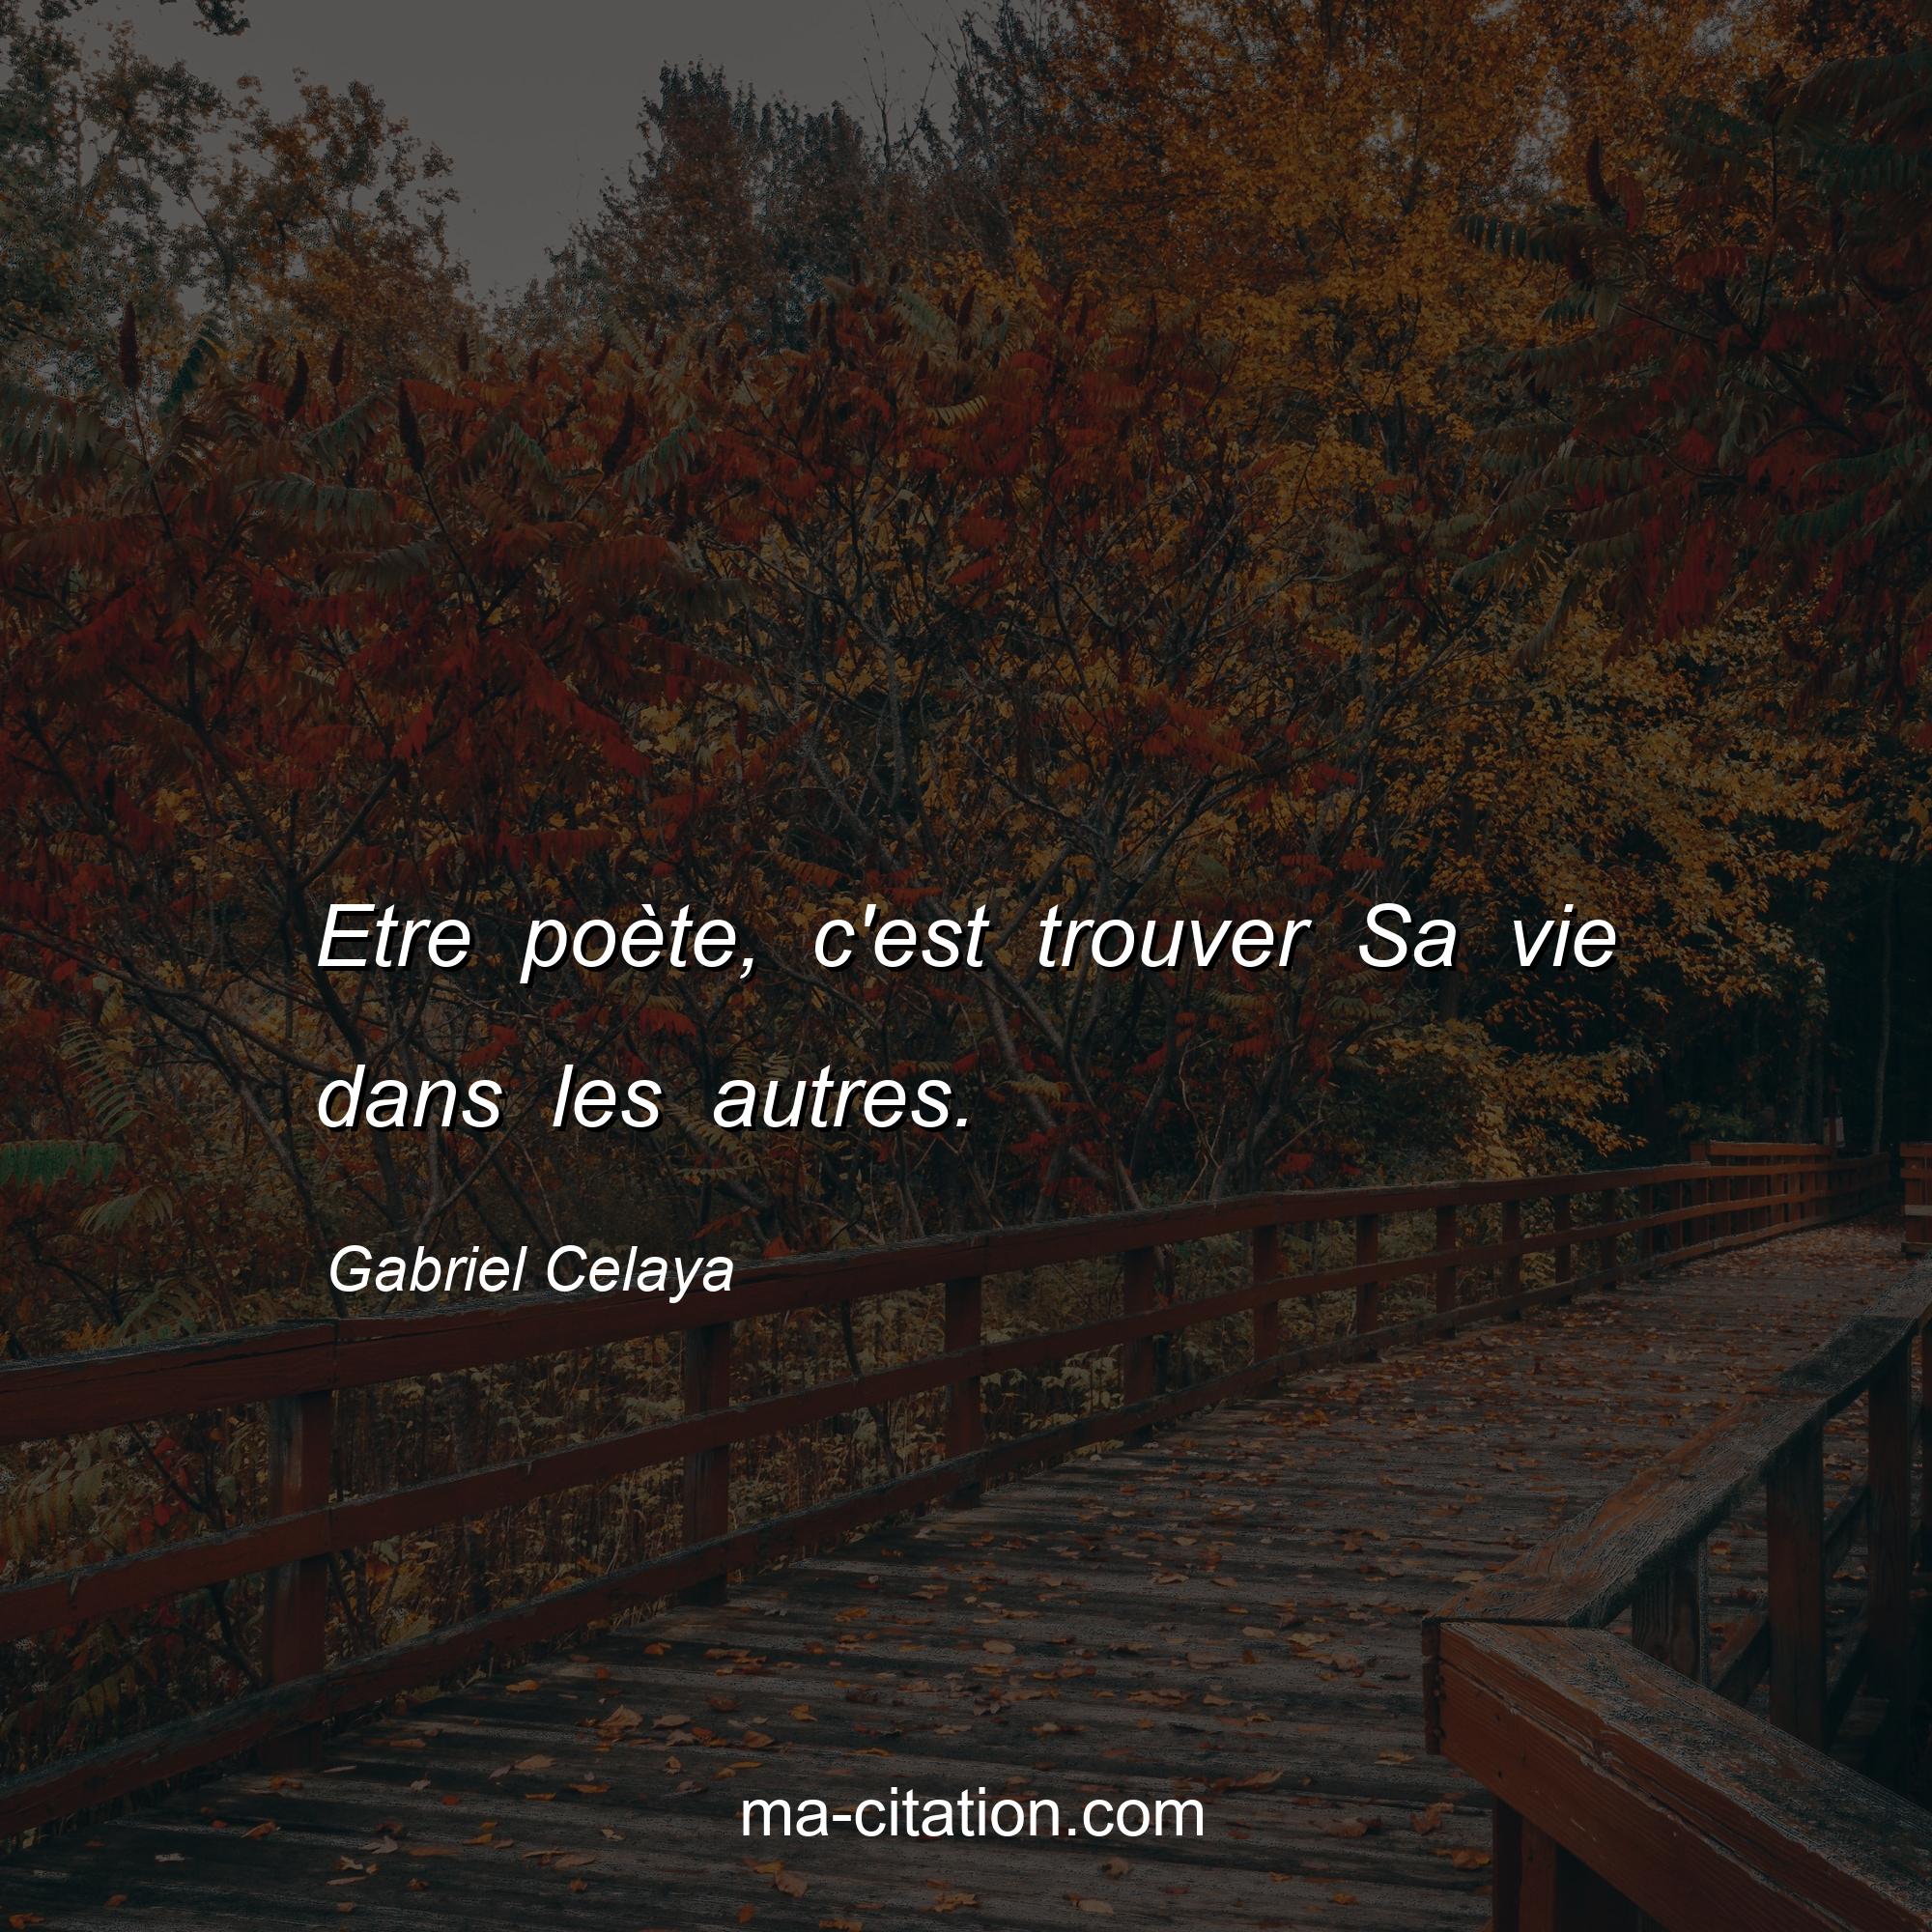 Gabriel Celaya : Etre poète, c'est trouver Sa vie dans les autres.